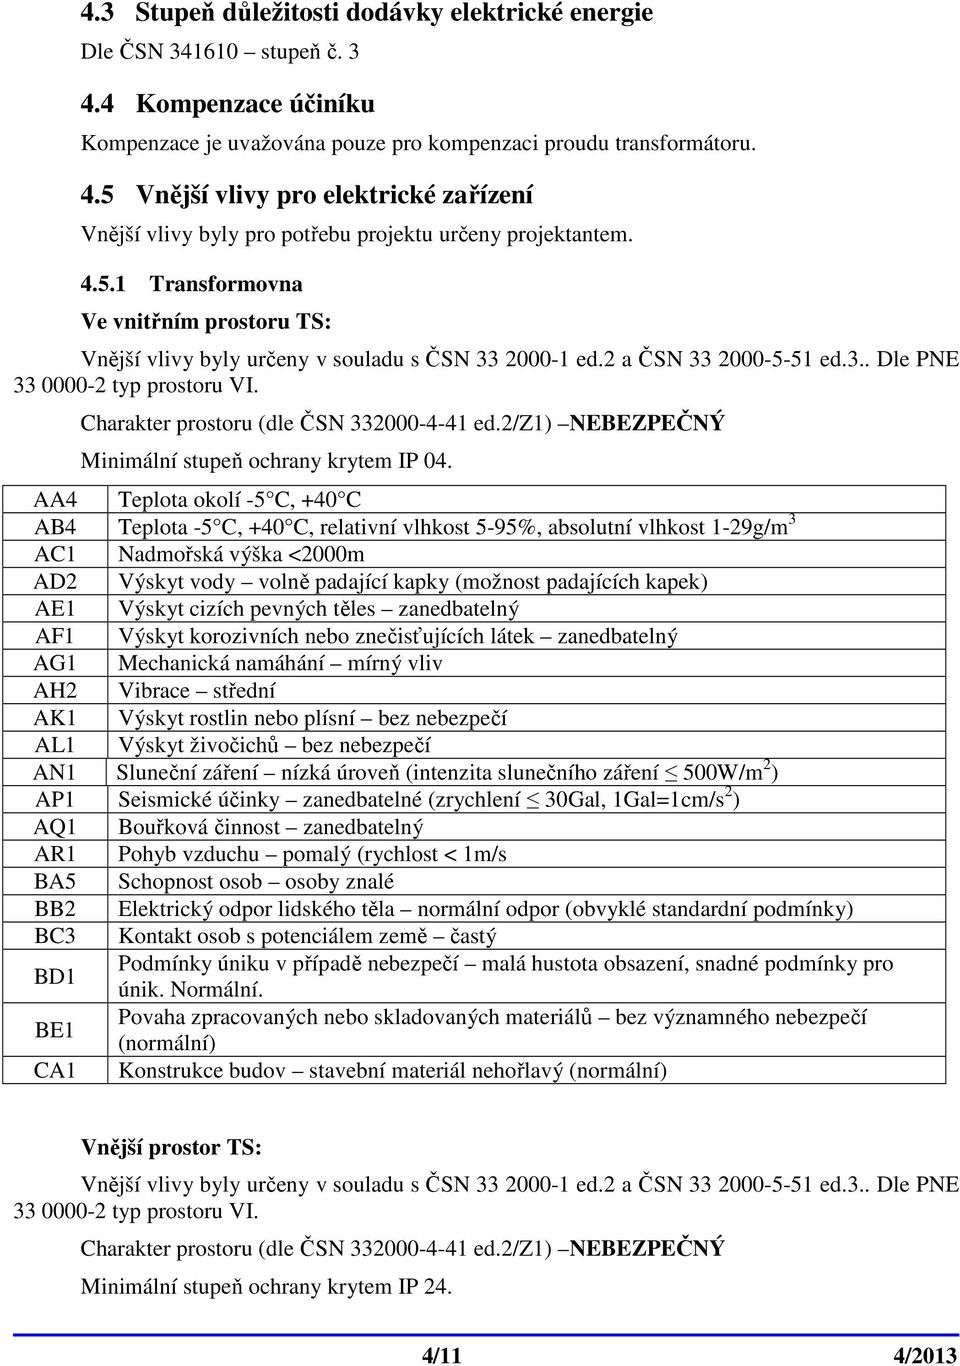 Charakter prostoru (dle ČSN 332000-4-41 ed.2/z1) NEBEZPEČNÝ Minimální stupeň ochrany krytem IP 04.